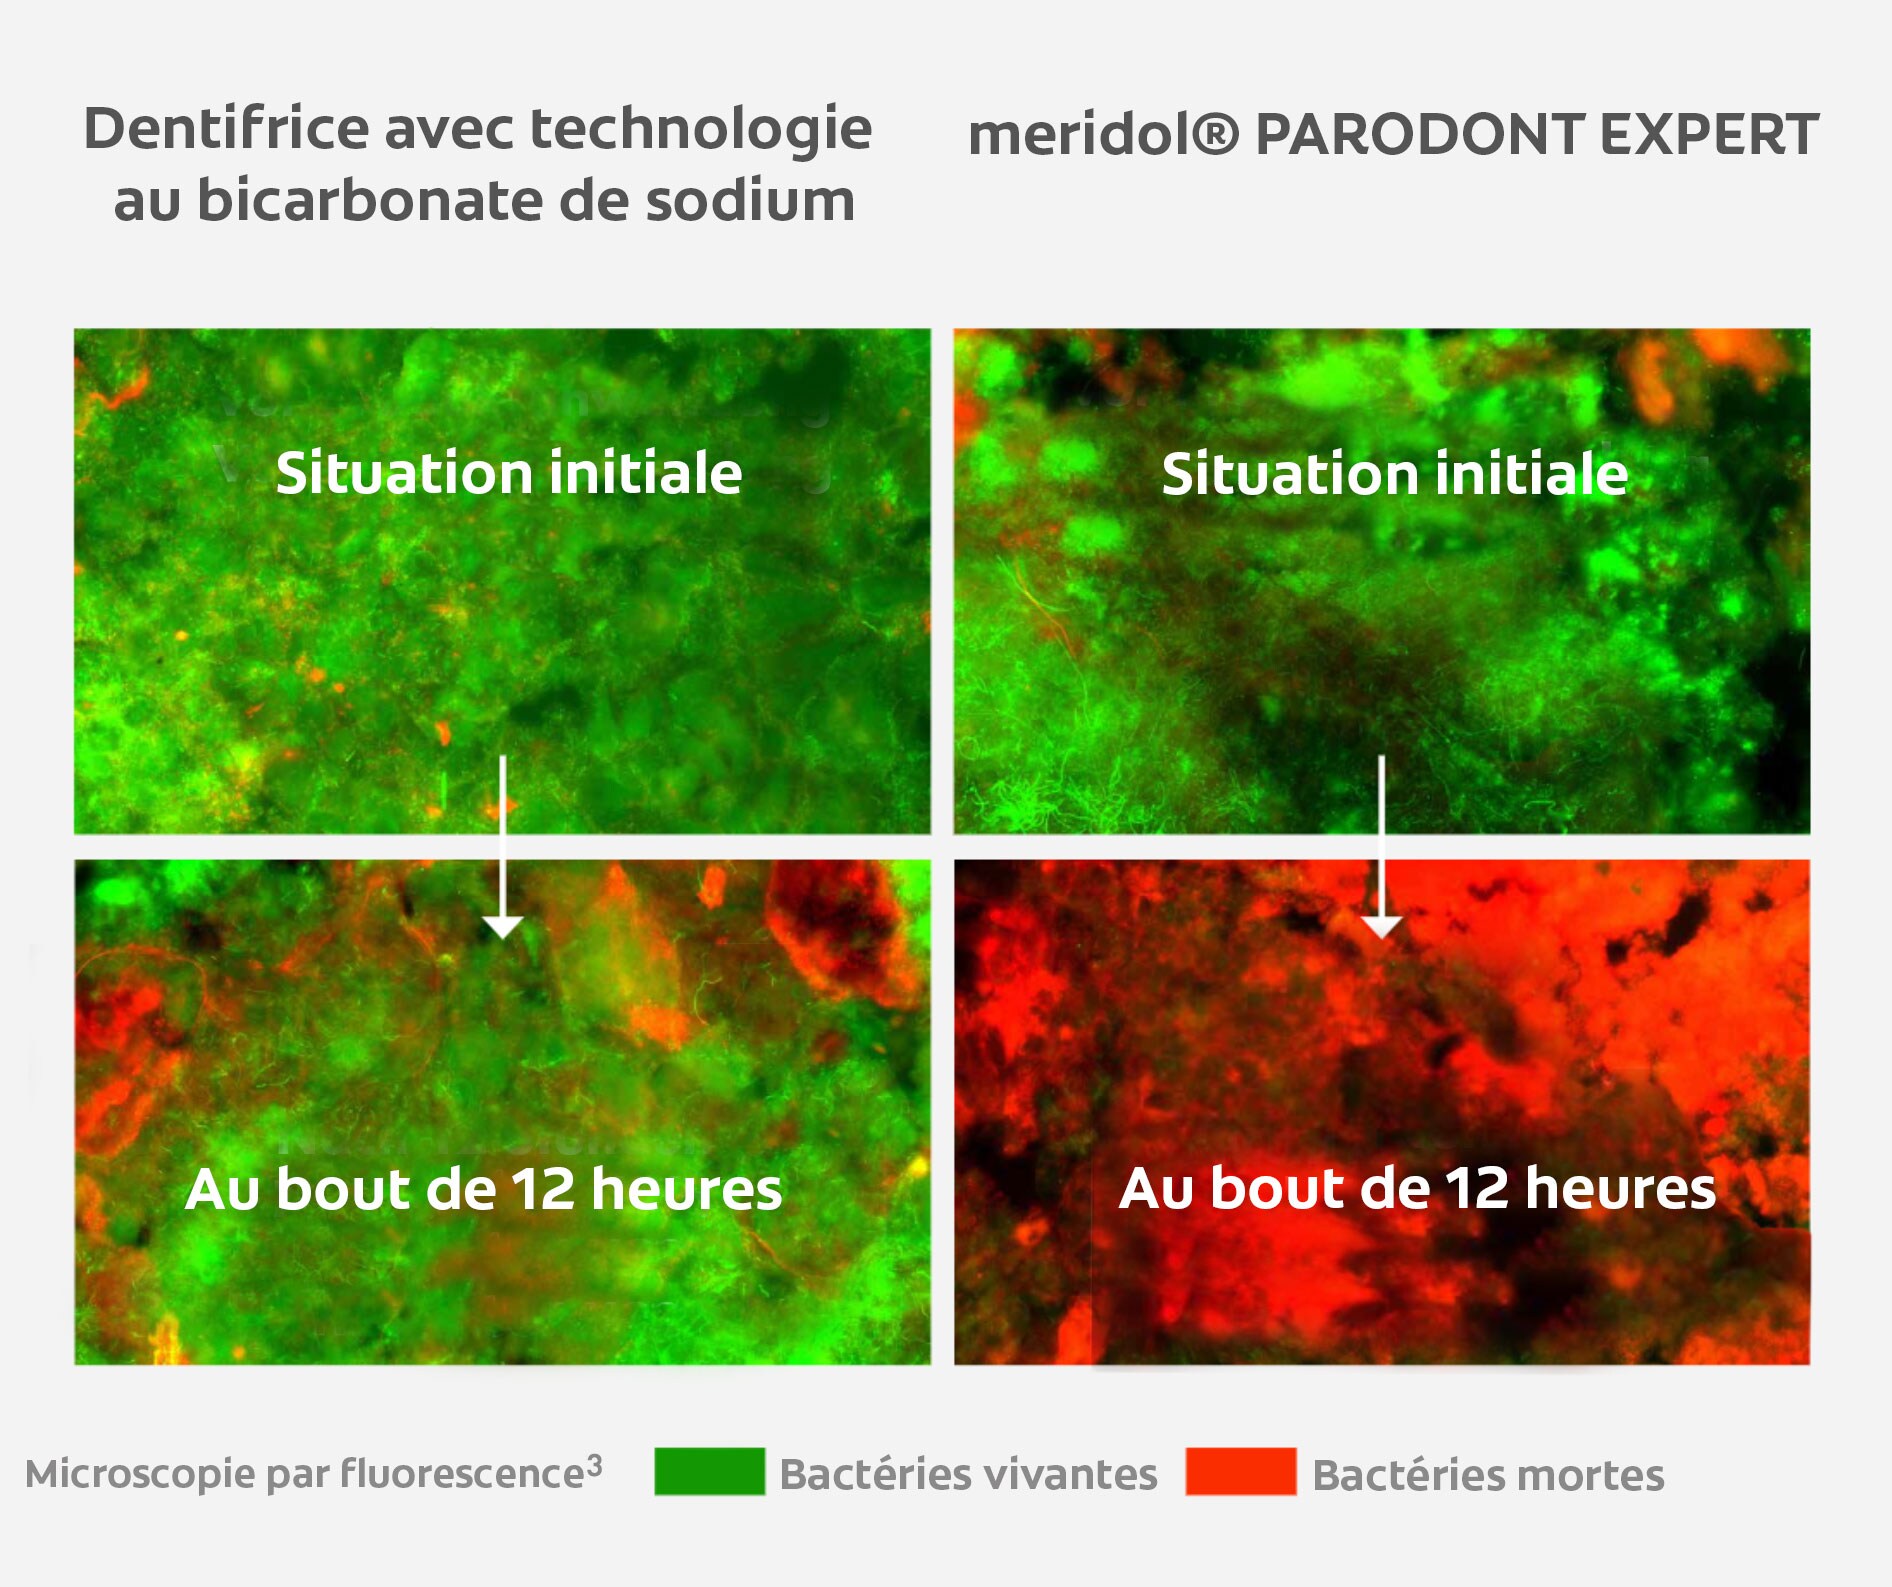 La microscopie par fluorescence montre l’effet antibactérien 12 heures après utilisation de meridol® PARODONT EXPERT 